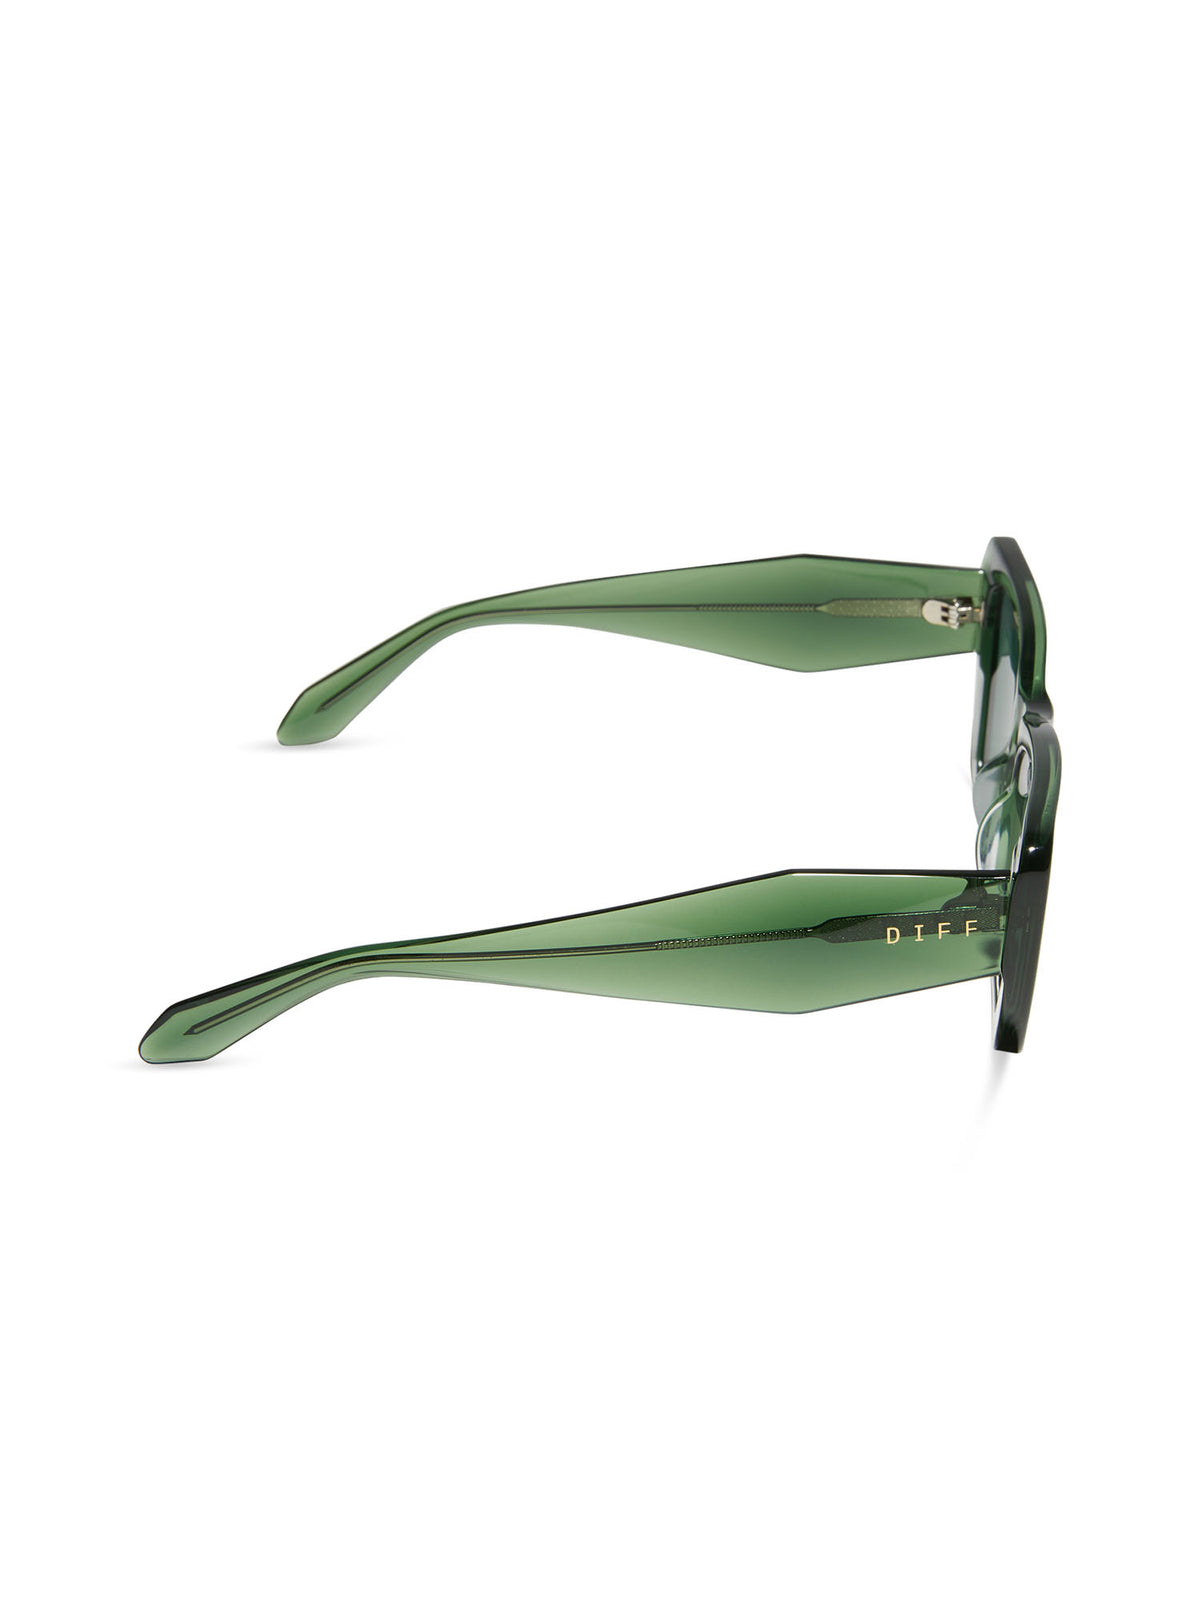 diff eyewear aura sunglasses in sage crystal g15 polarized